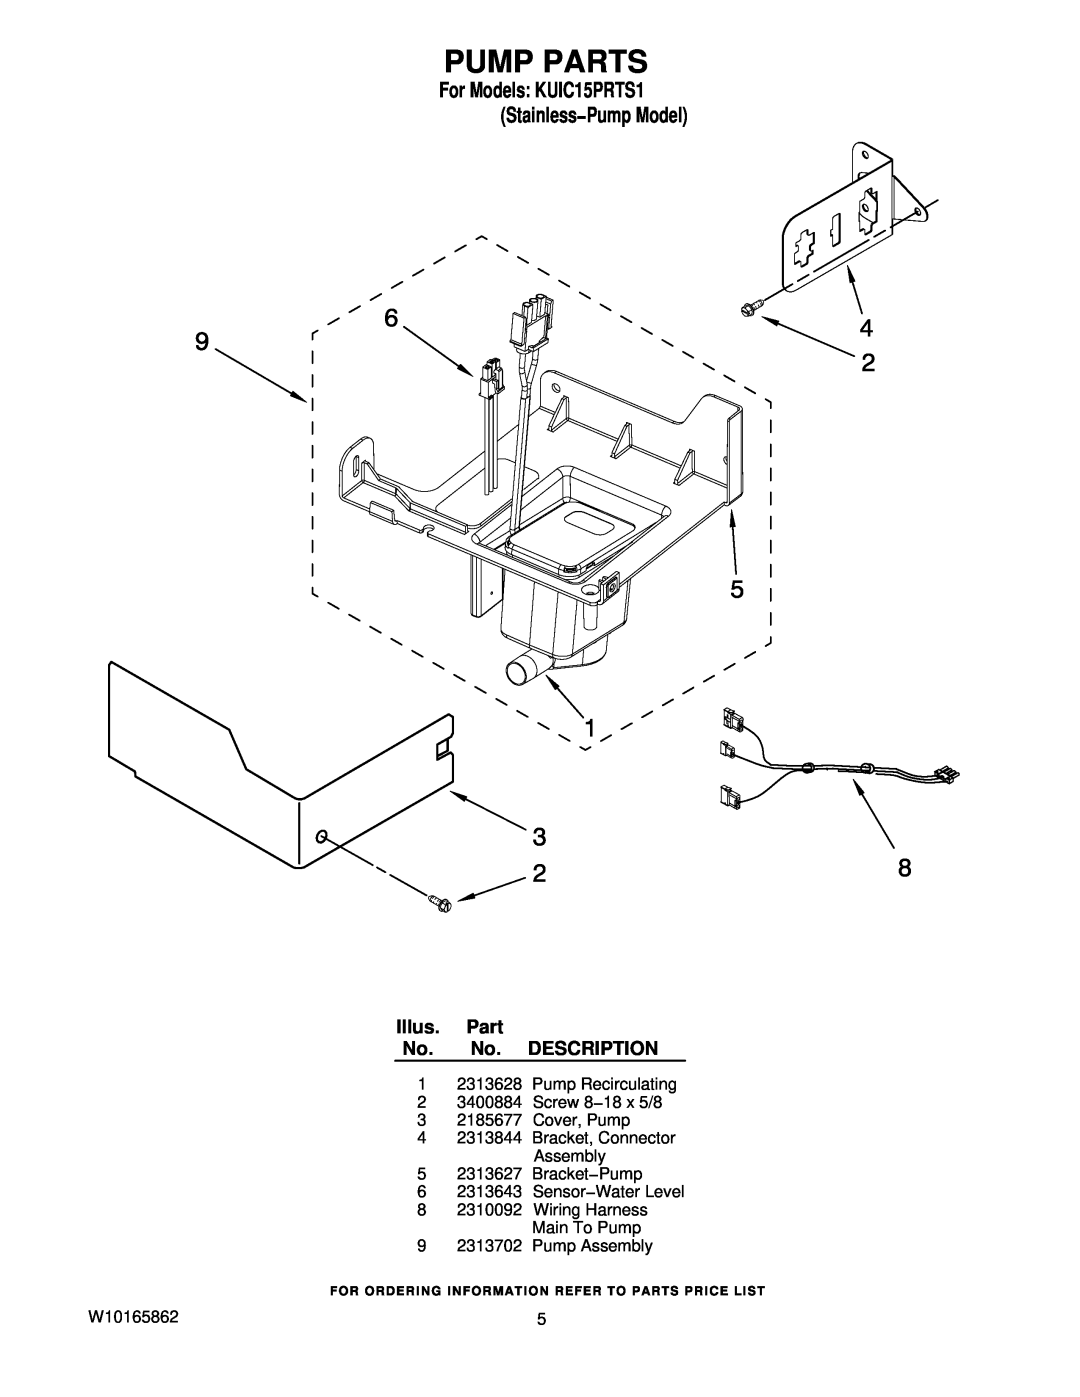 KitchenAid manual Pump Parts, Illus. Part No. No. DESCRIPTION, For Models KUIC15PRTS1 Stainless−Pump Model 